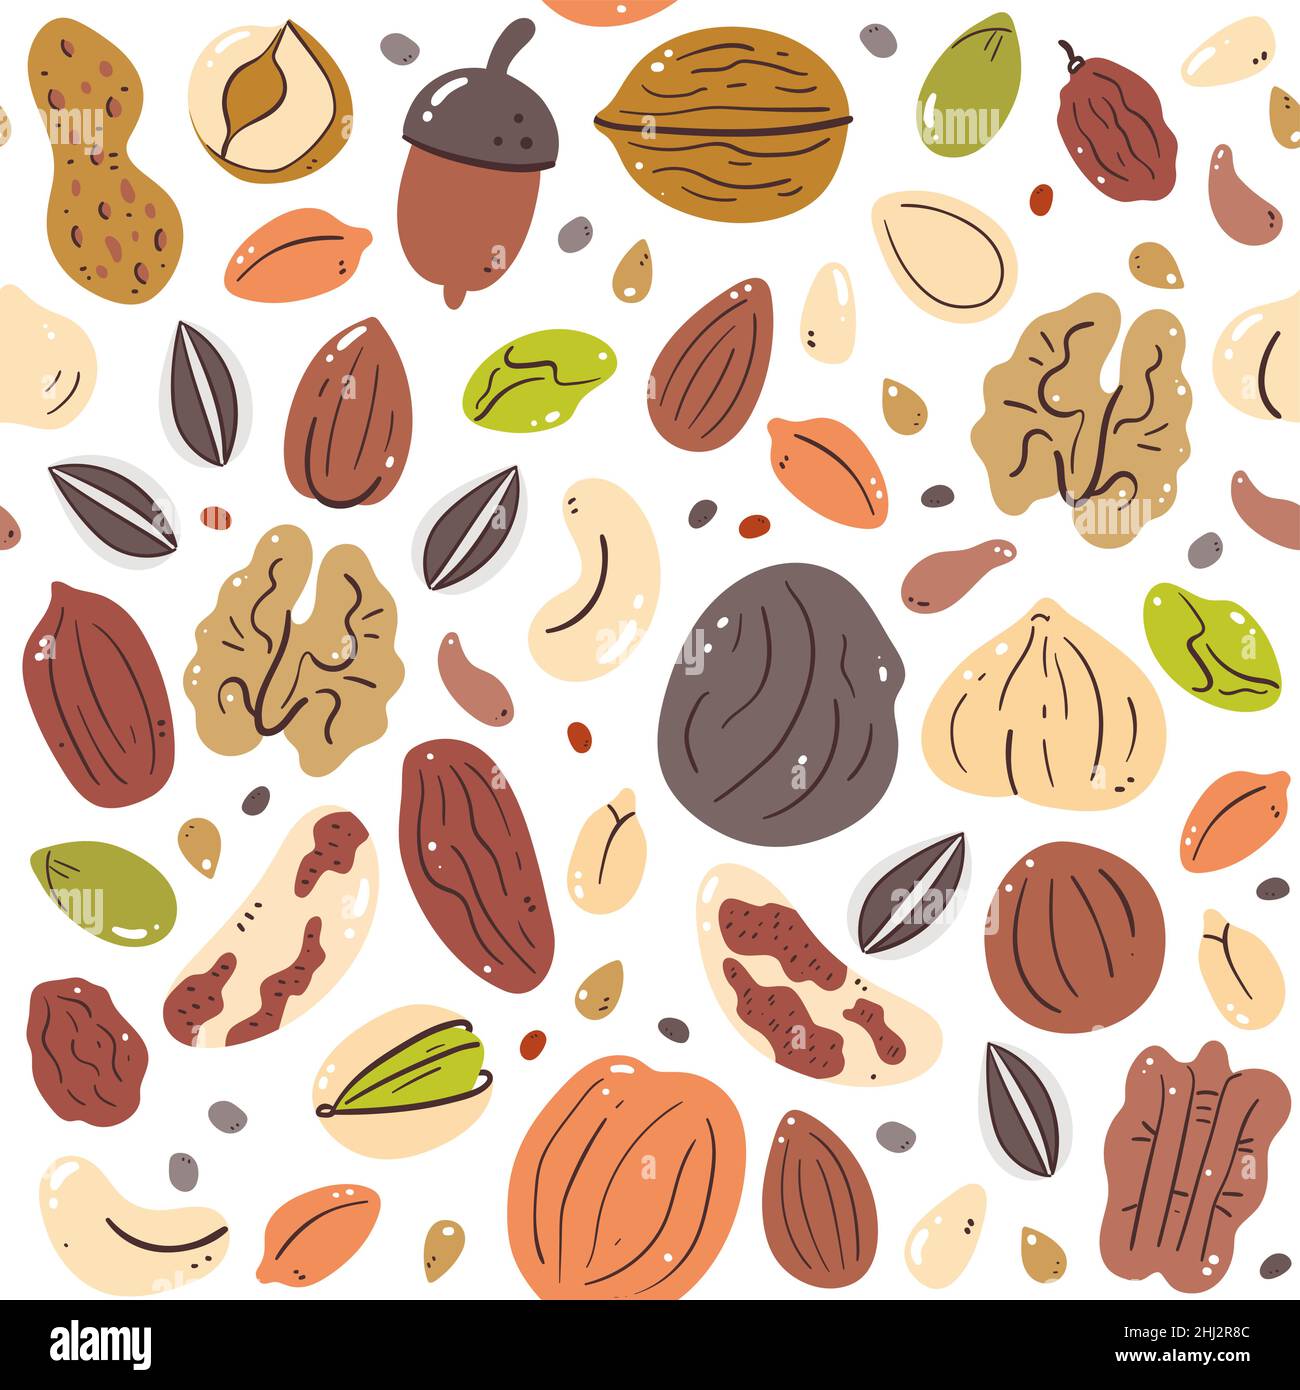 Nüsse und Samen nahtloses Muster. Abbildung: Zutaten für das Kochen. Isolierte, farbenfrohe, handgezeichnete Zutaten auf weißem Hintergrund. Vektor-Illus Stock Vektor